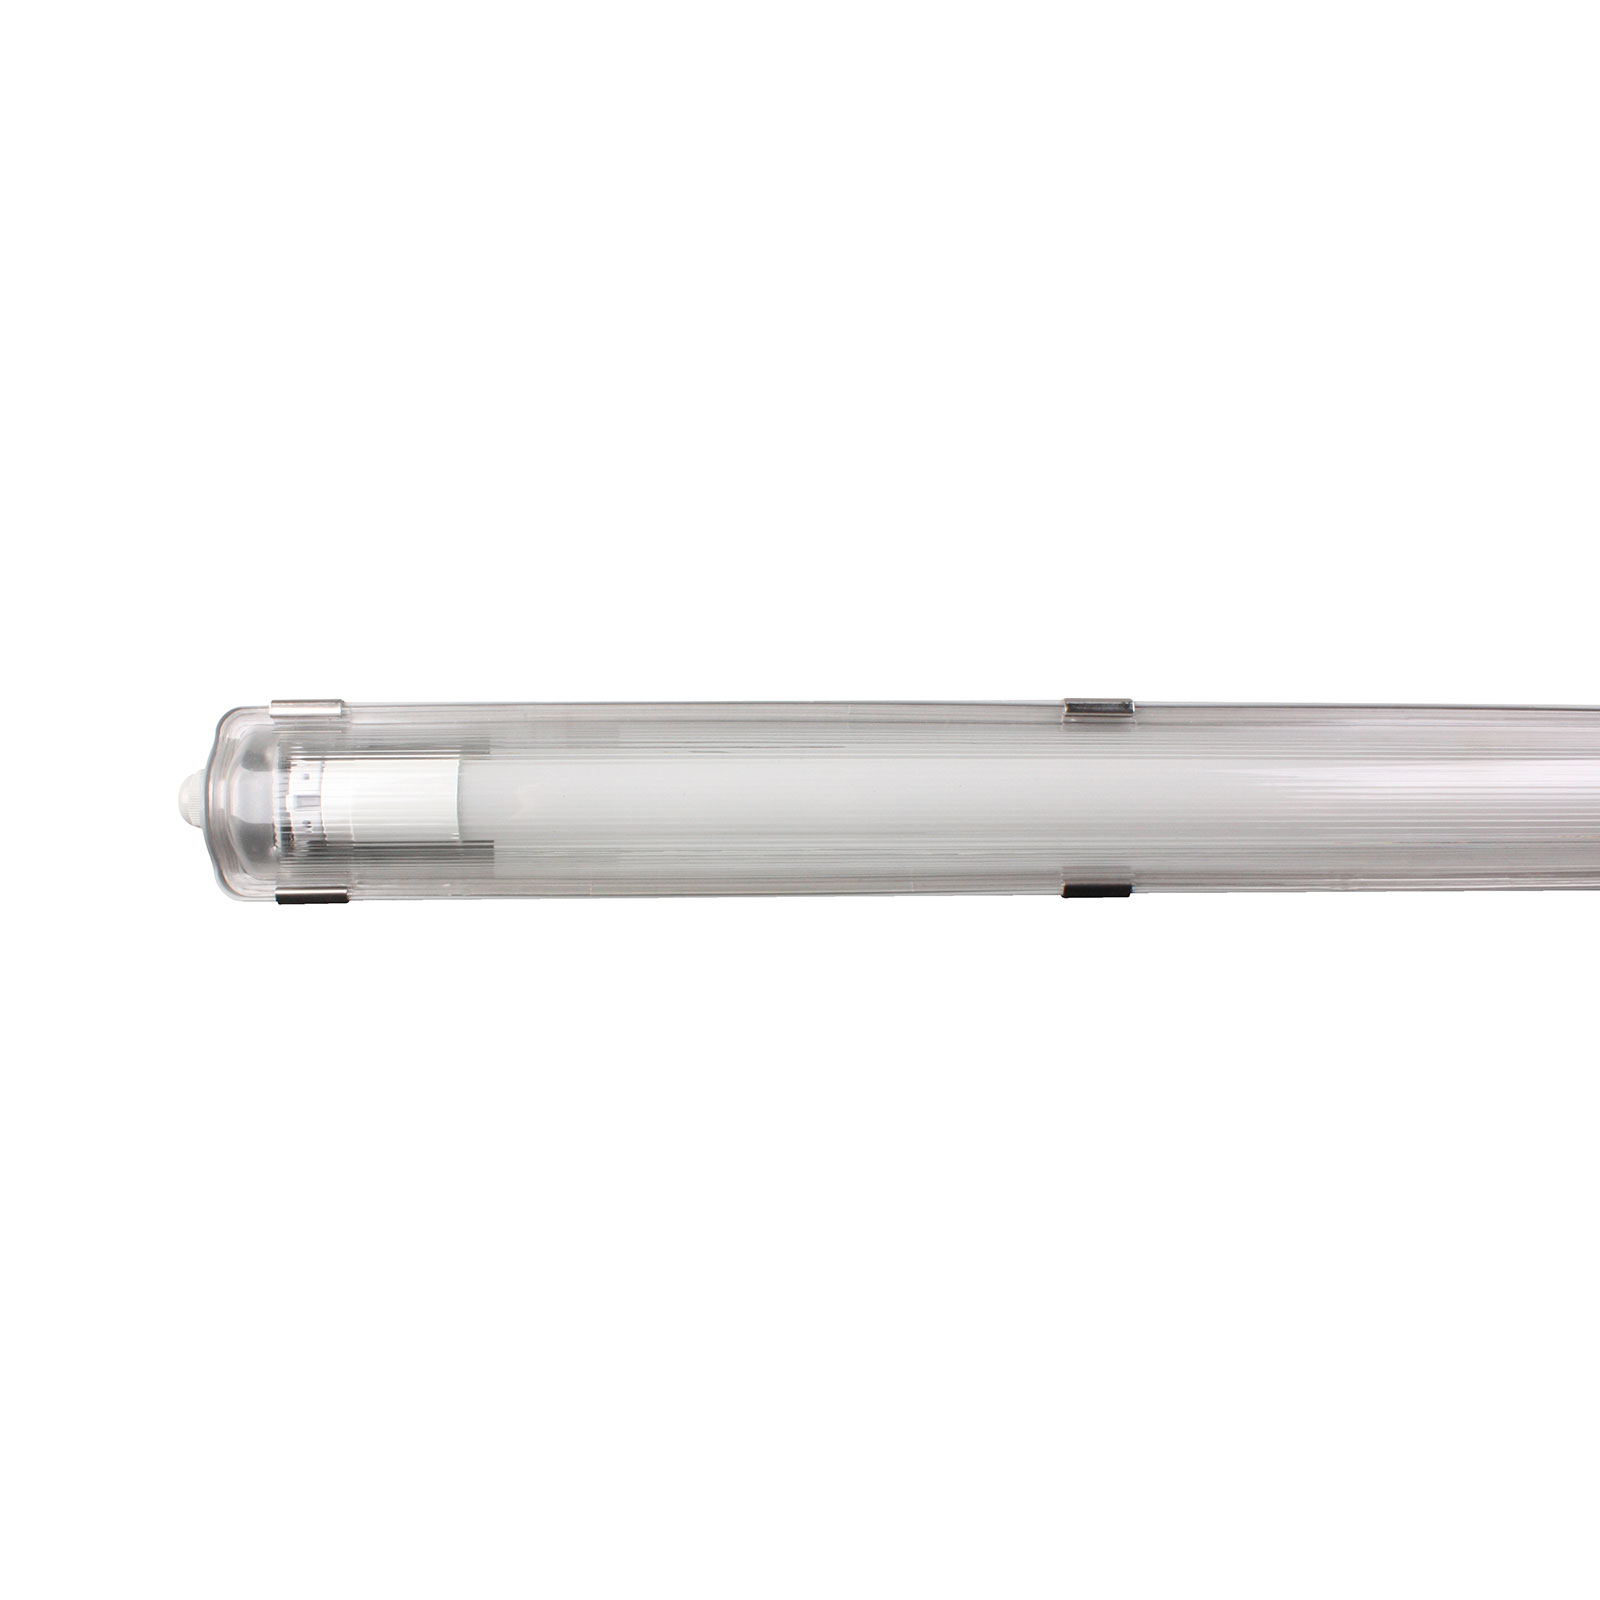 Svítidlo Aqua-Promo 1/150 odolné proti vlhkosti, 157,2 cm G13 2100 lm 840